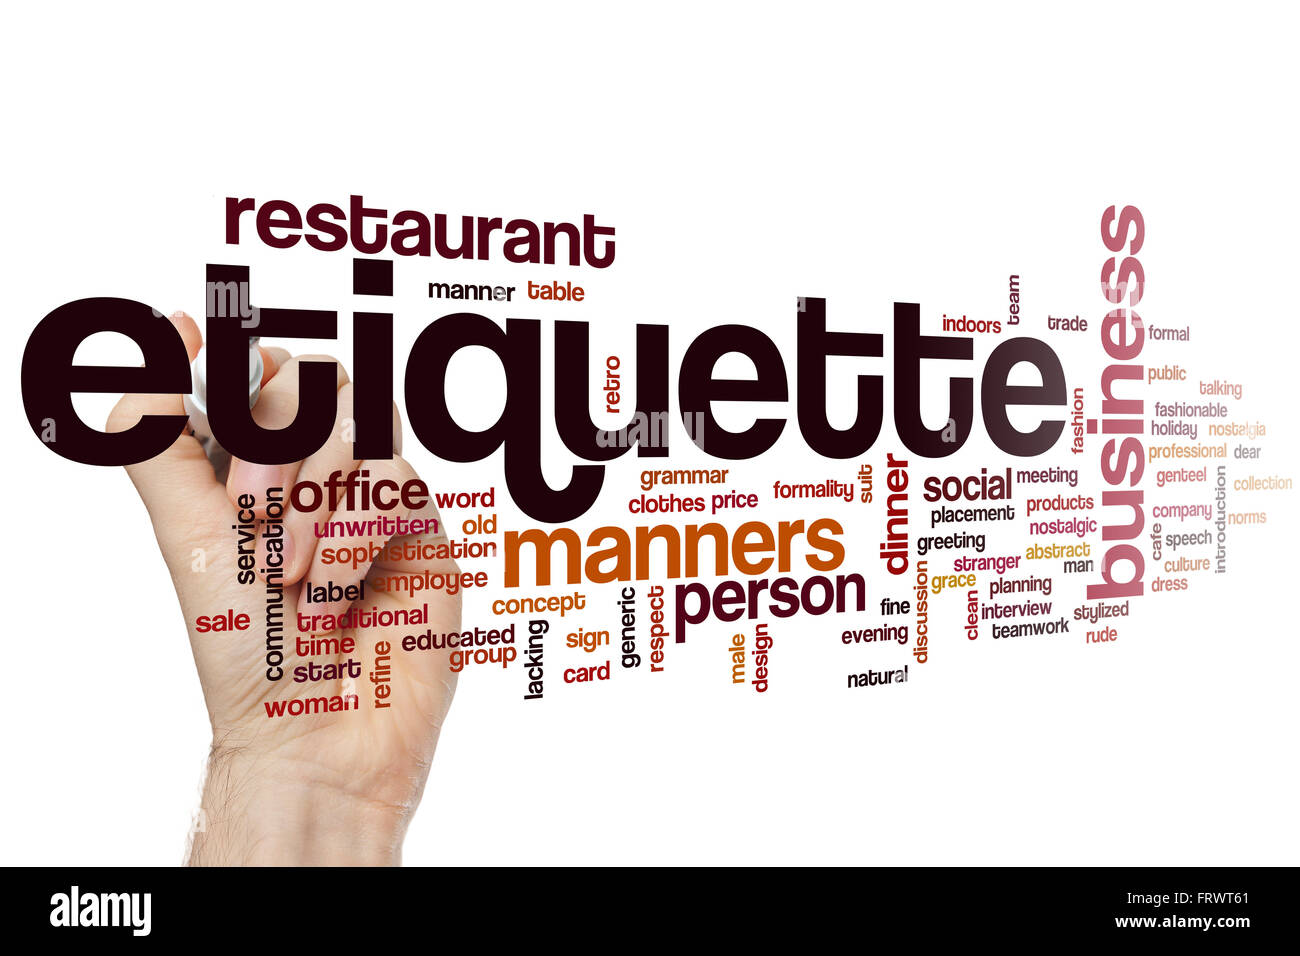 Etiquette concept word cloud background Stock Photo